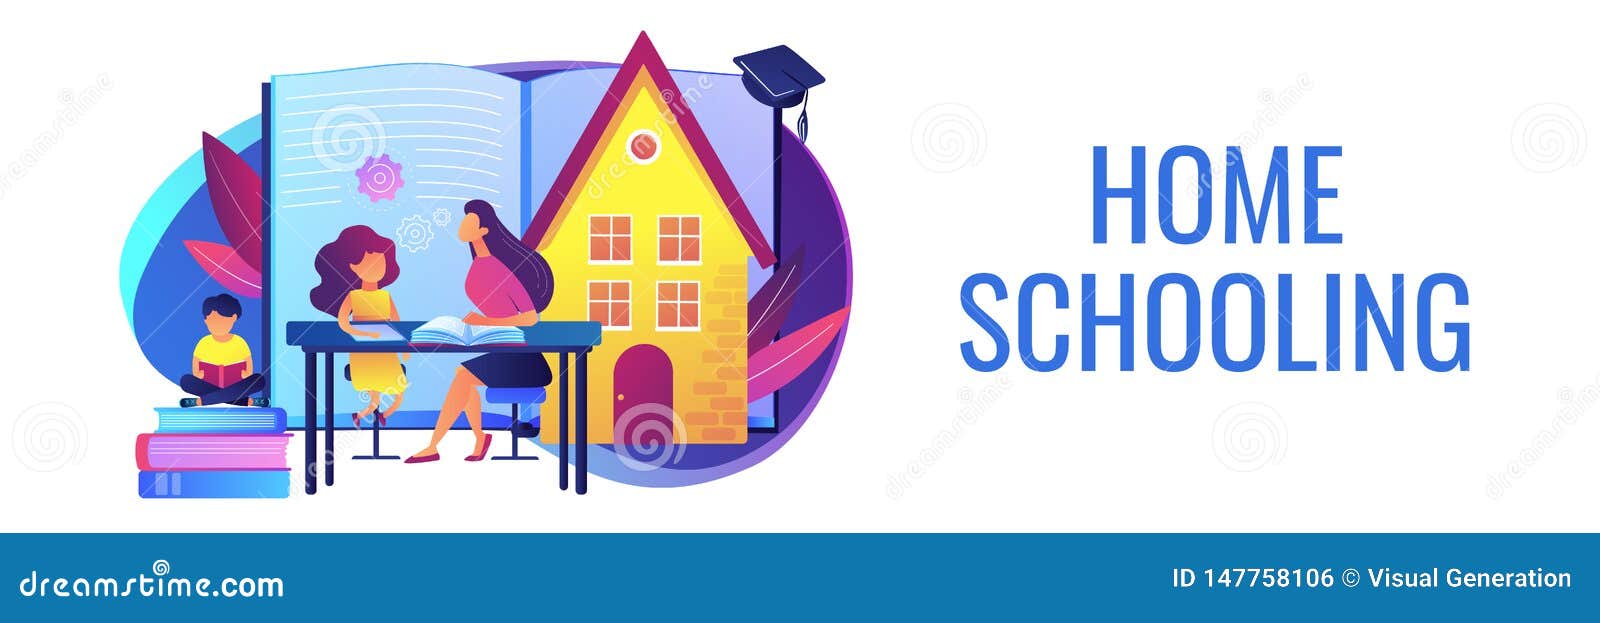 home schooling concept banner header.